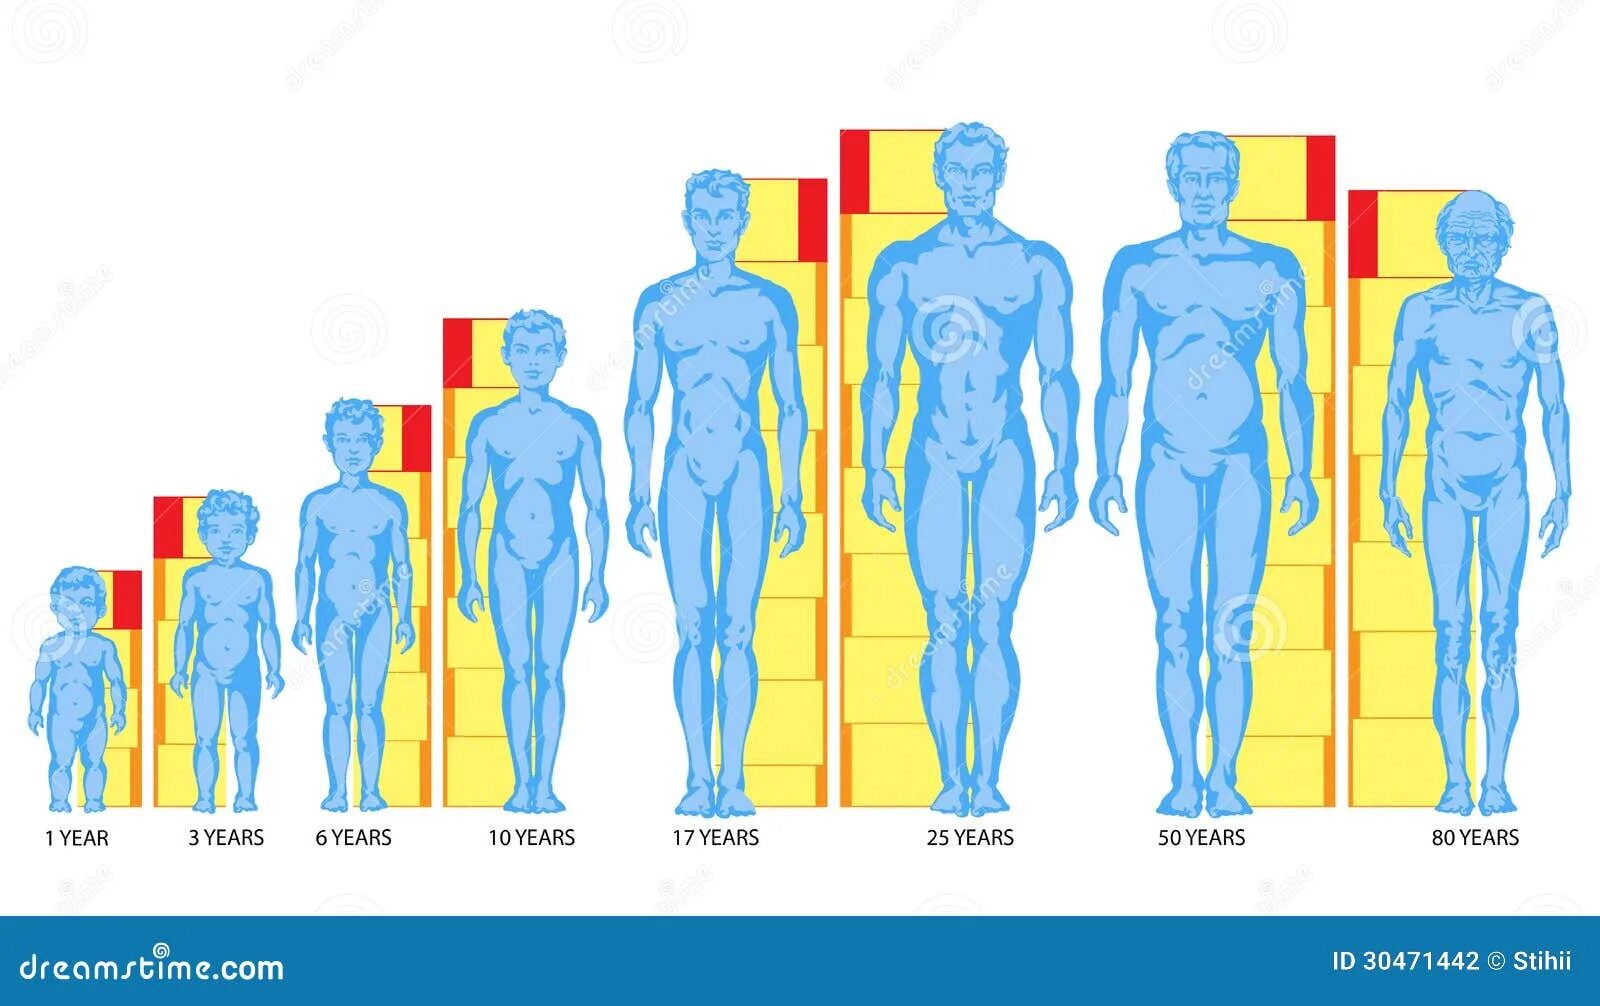 Пропорции человека в разном возрасте. Пропорции тела человека схема. Пропорции человека по возрасту. Пропорции взрослого человека и ребенка.